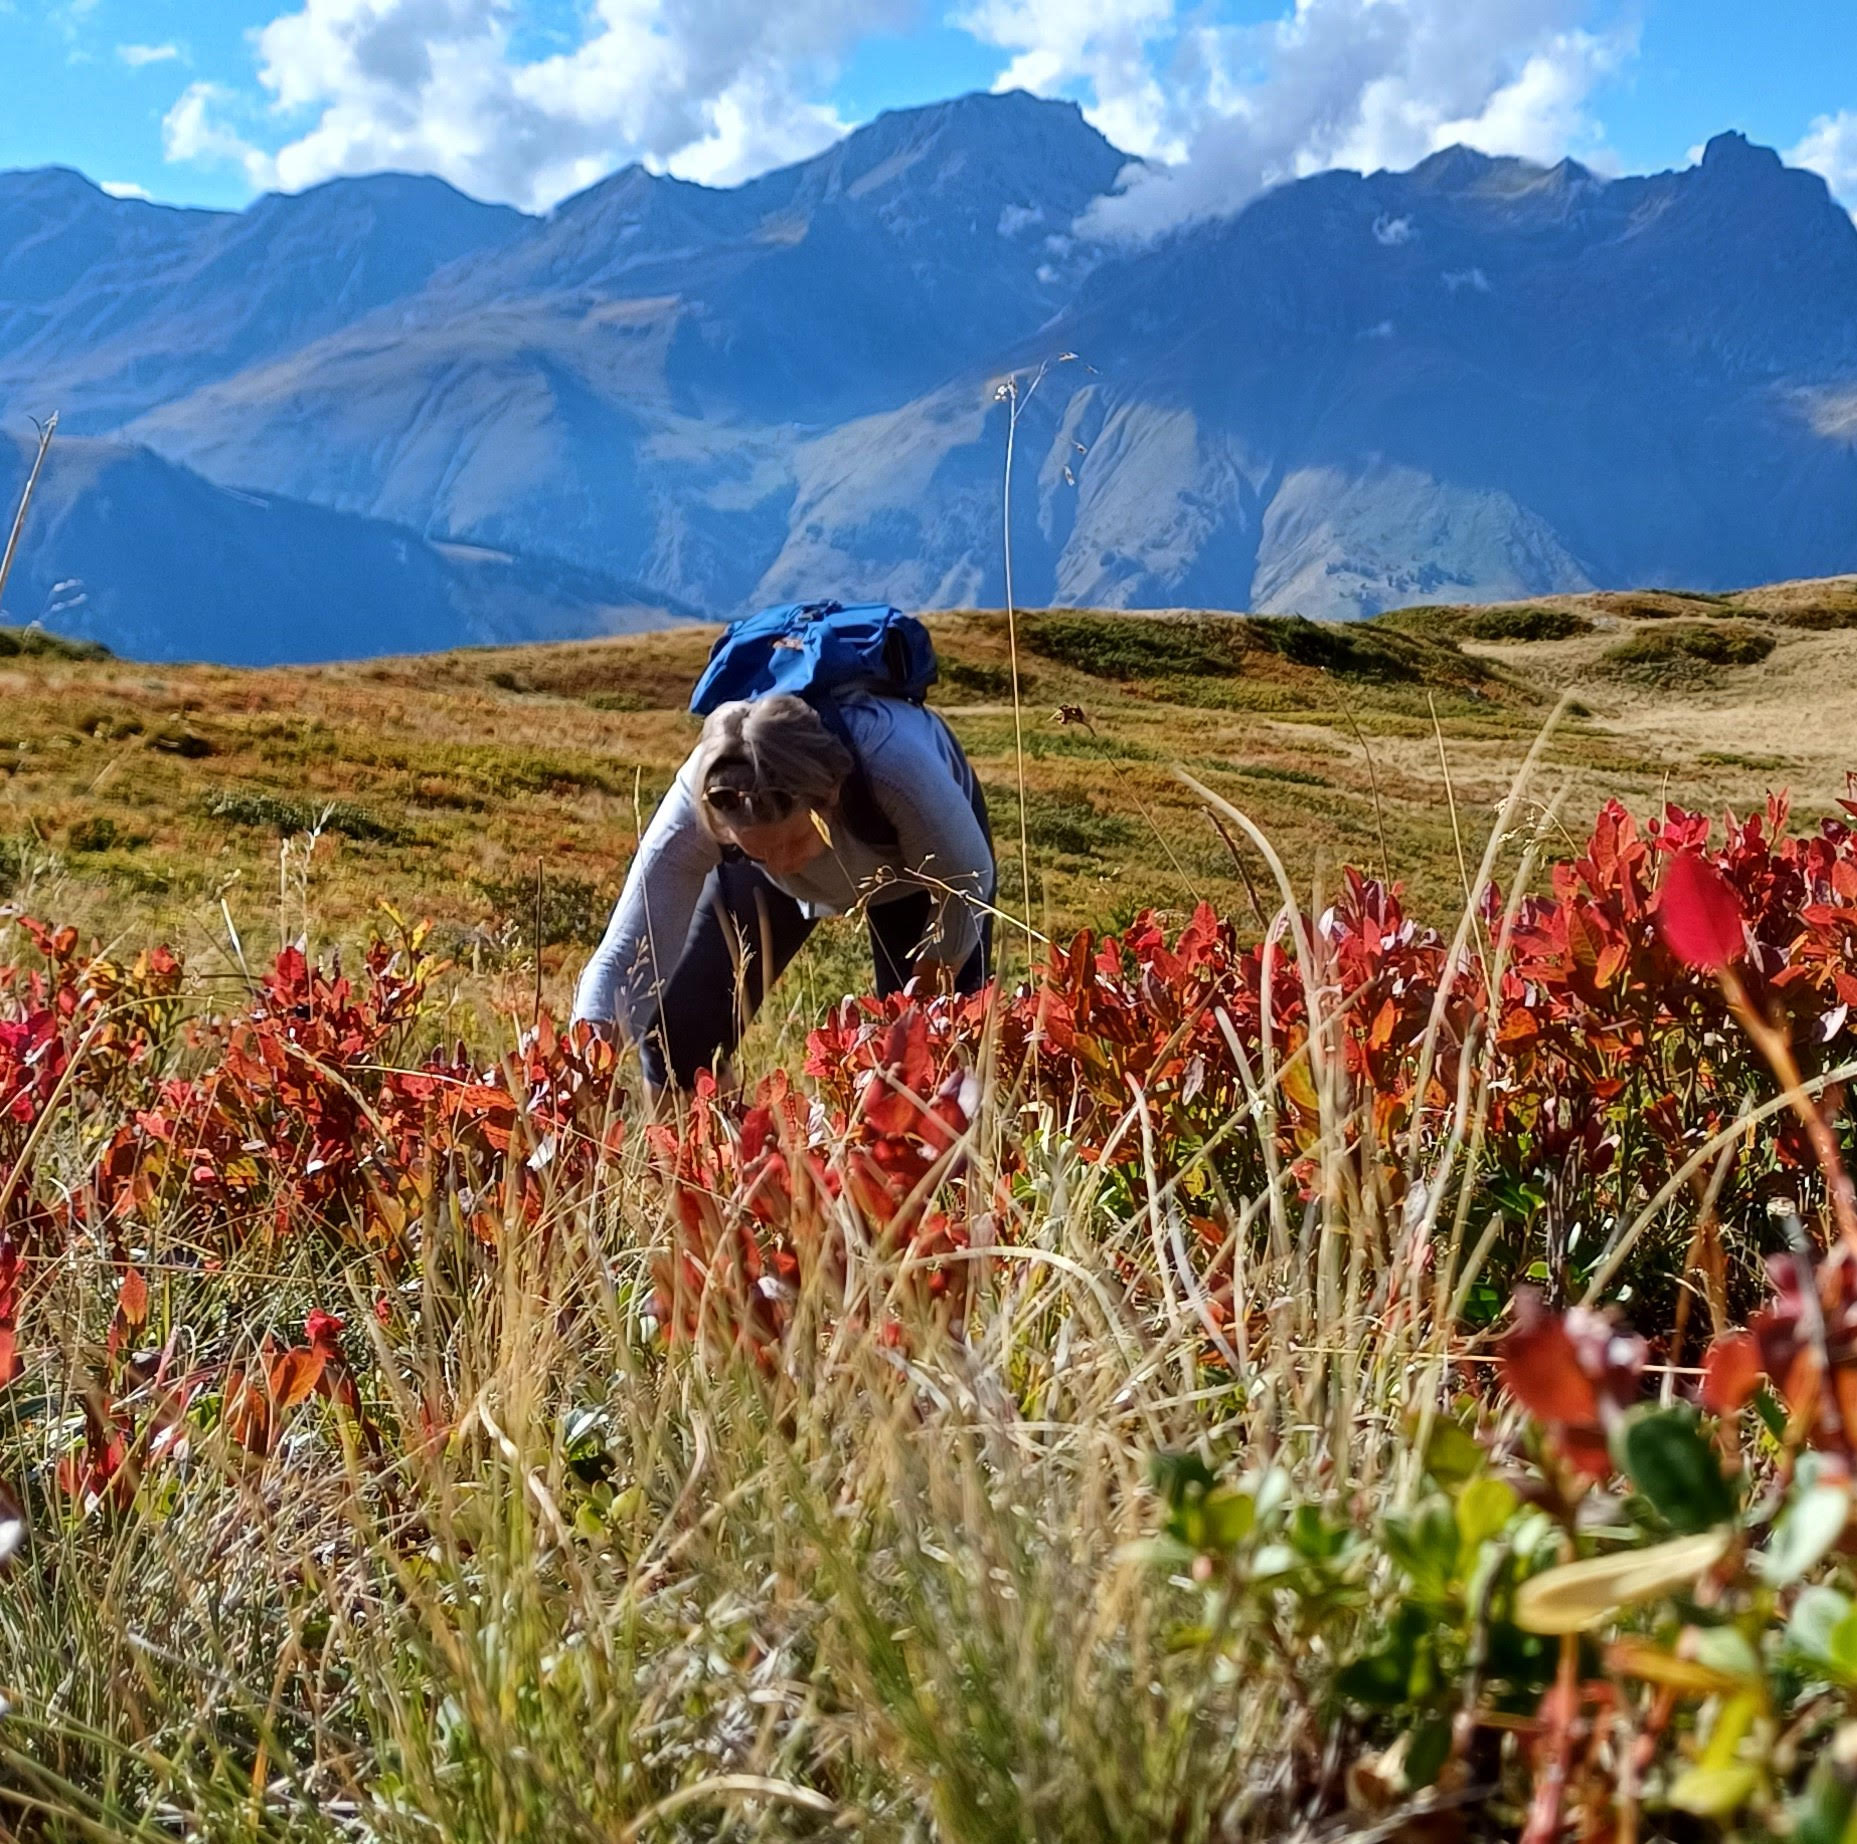 Bremer Mietköchin bei der Sammlung von Blaubeeren in den französischen Alpen